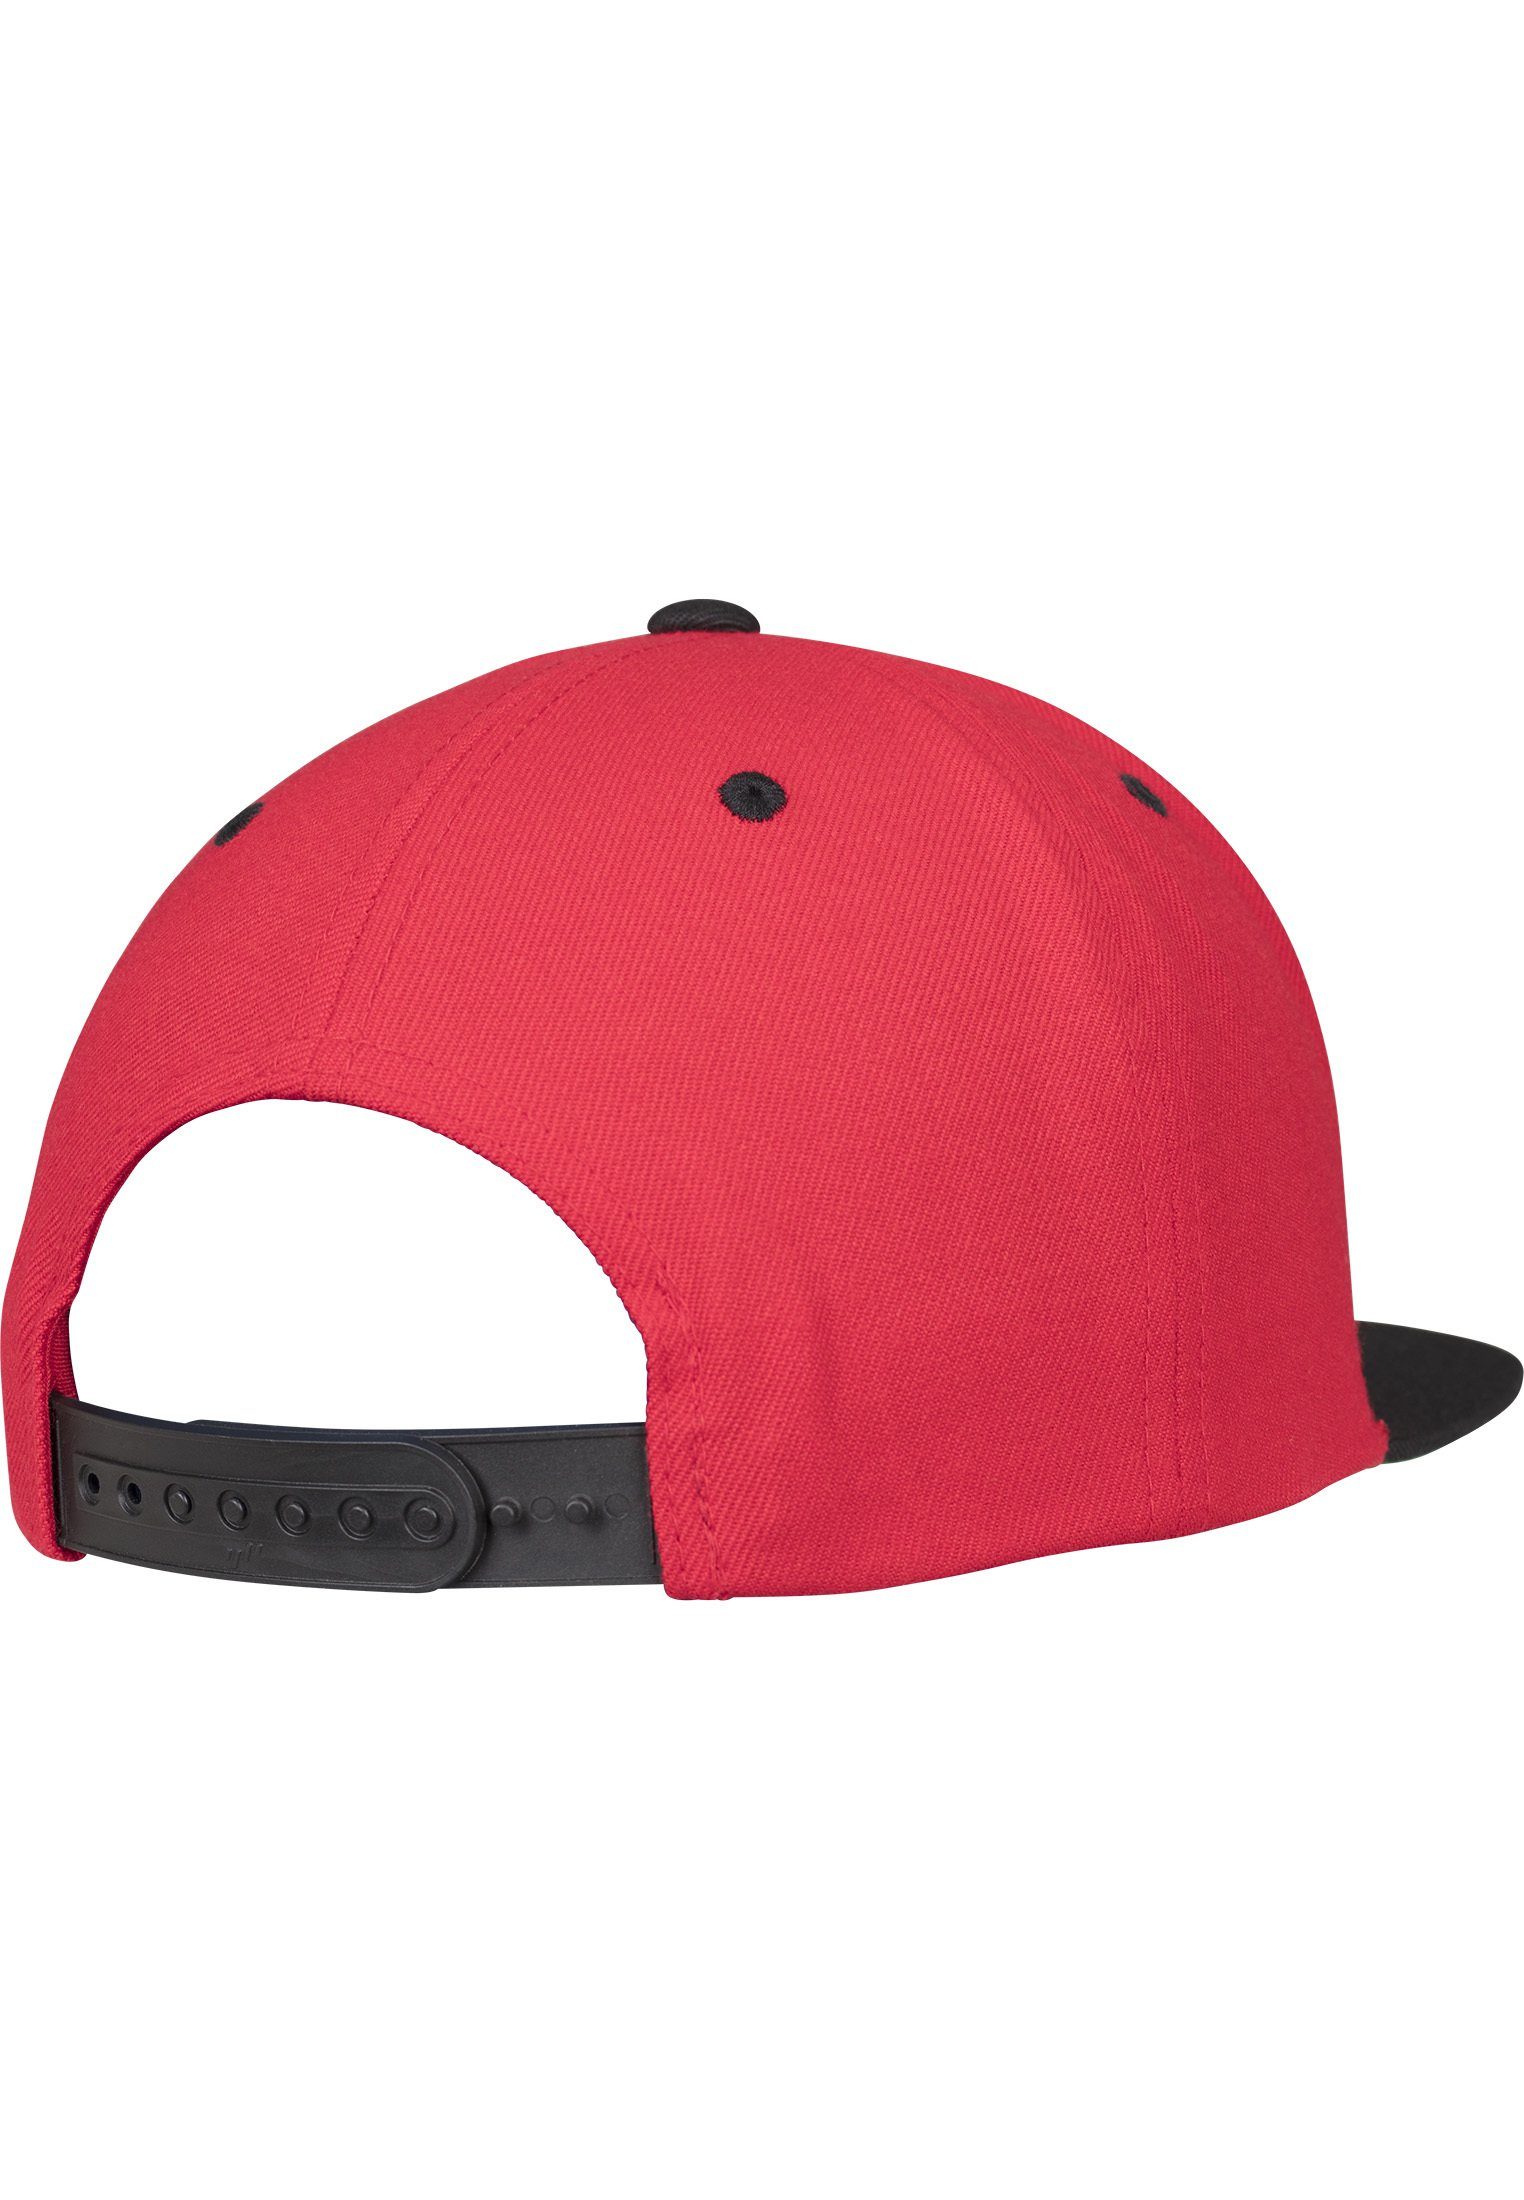 Snapback Classic red/black Snapback 2-Tone Cap Flexfit Flex